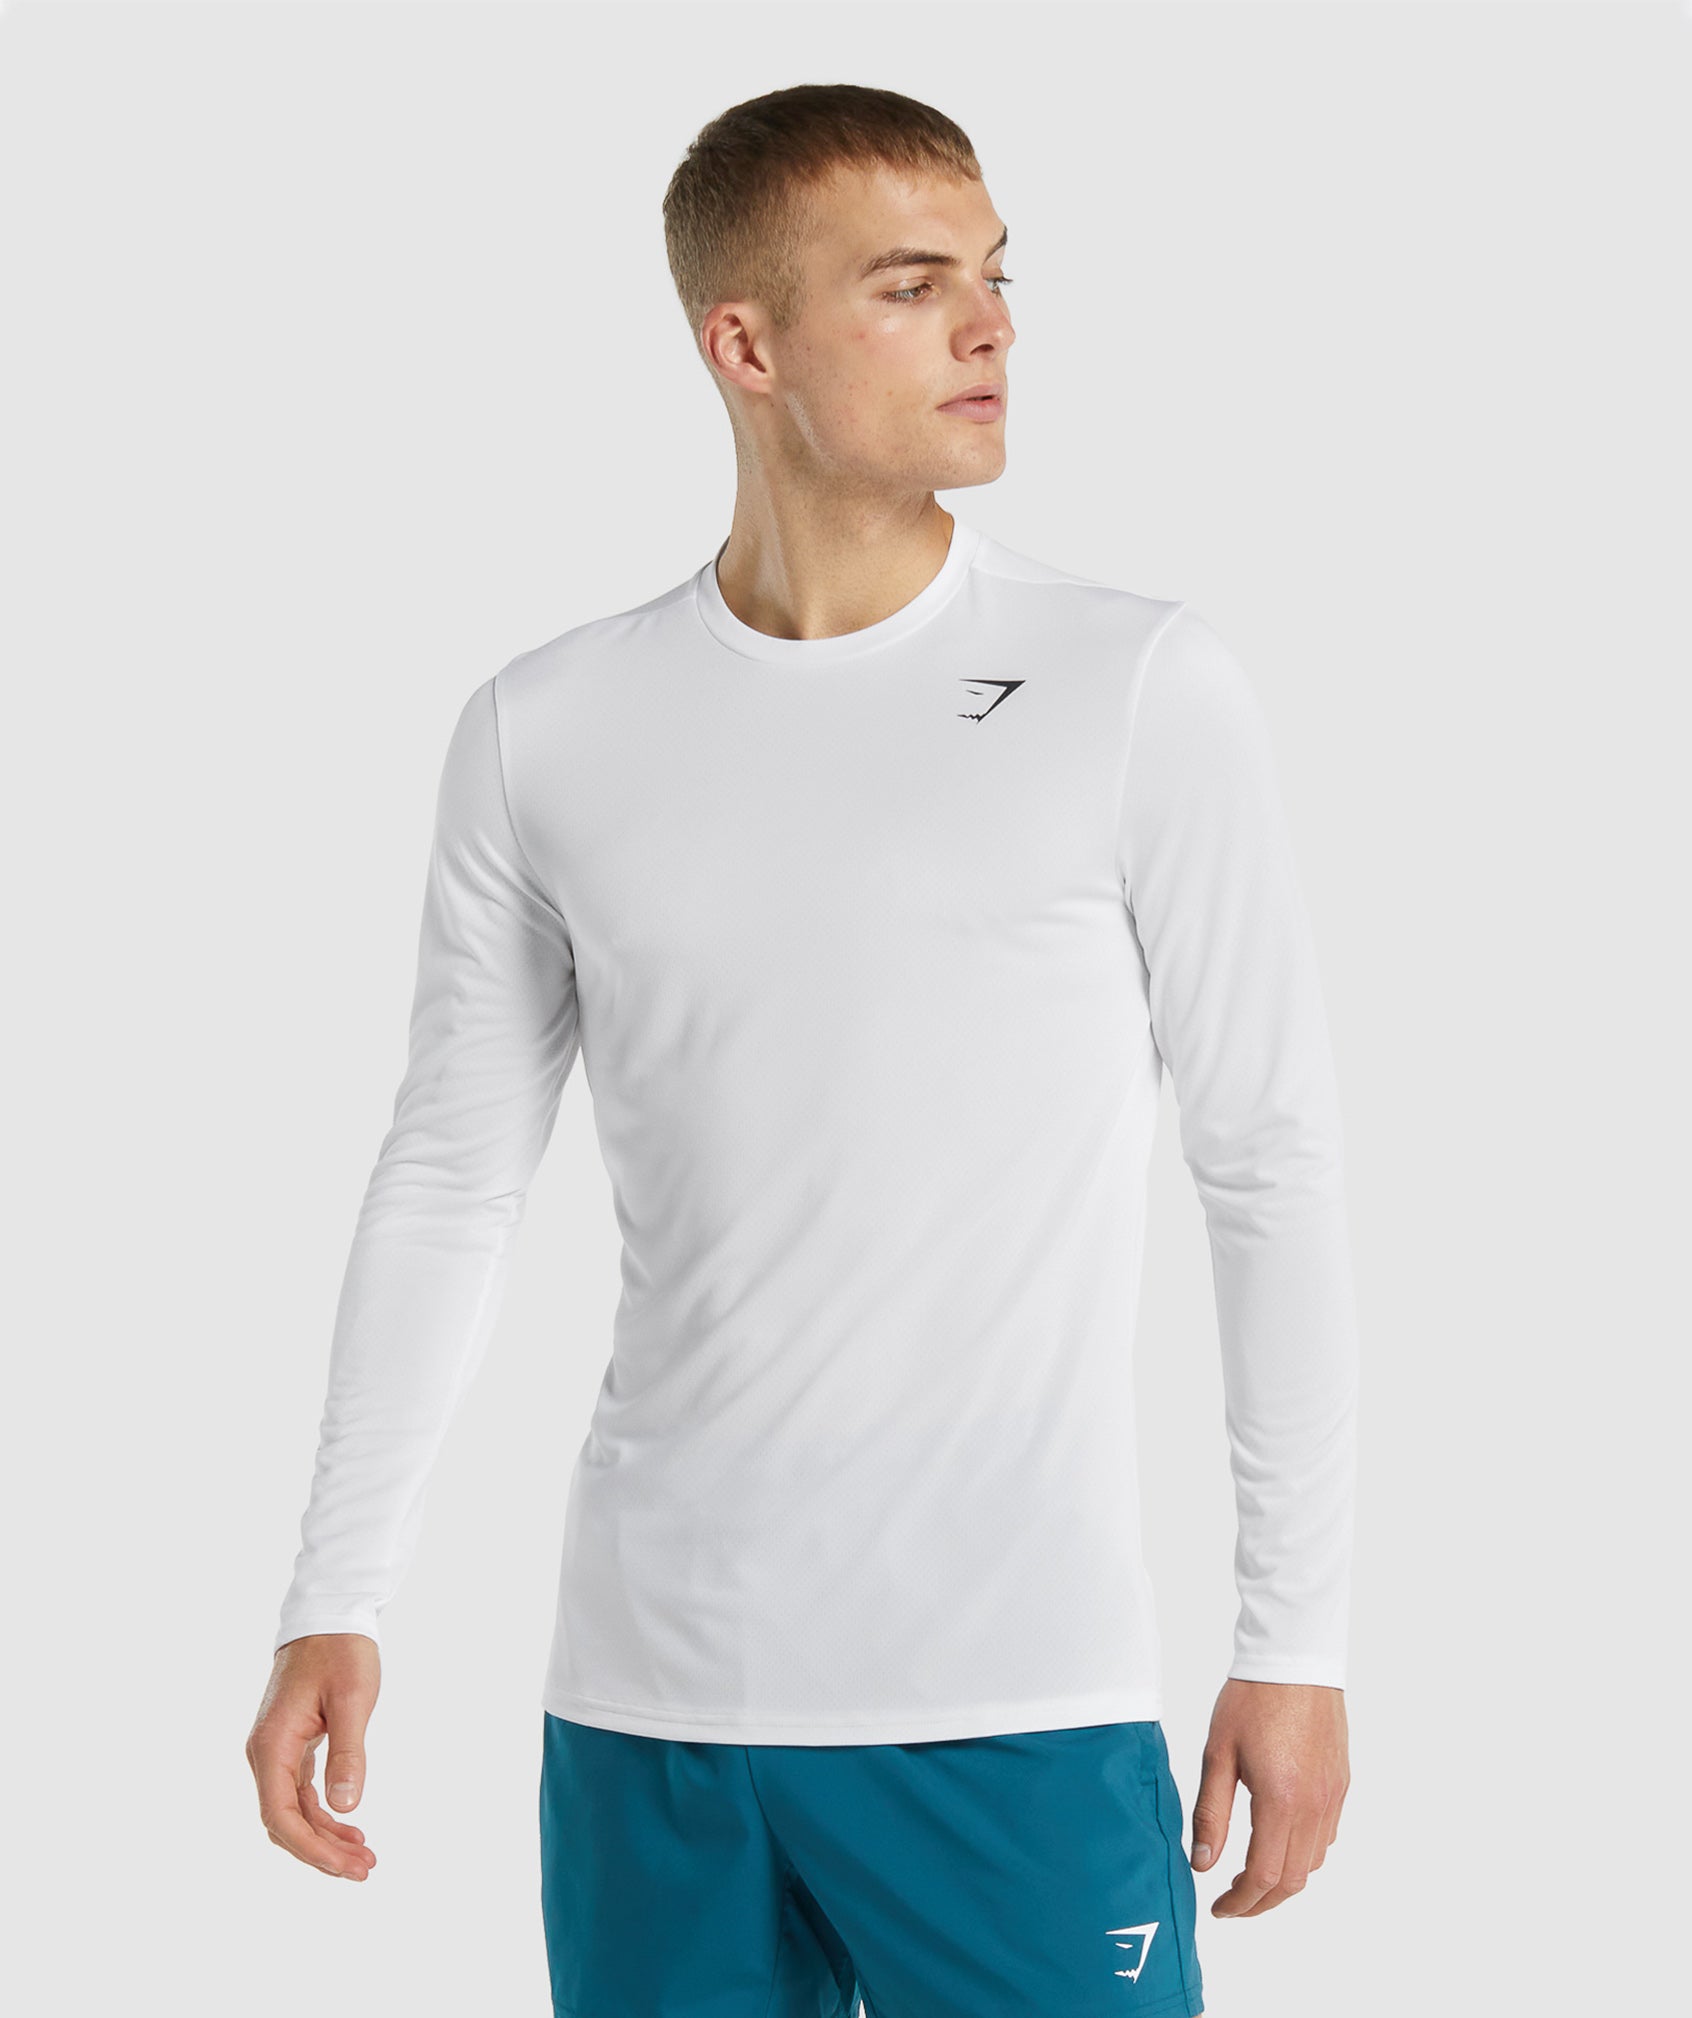 Gymshark Crest Long Sleeve T-Shirt - Navy